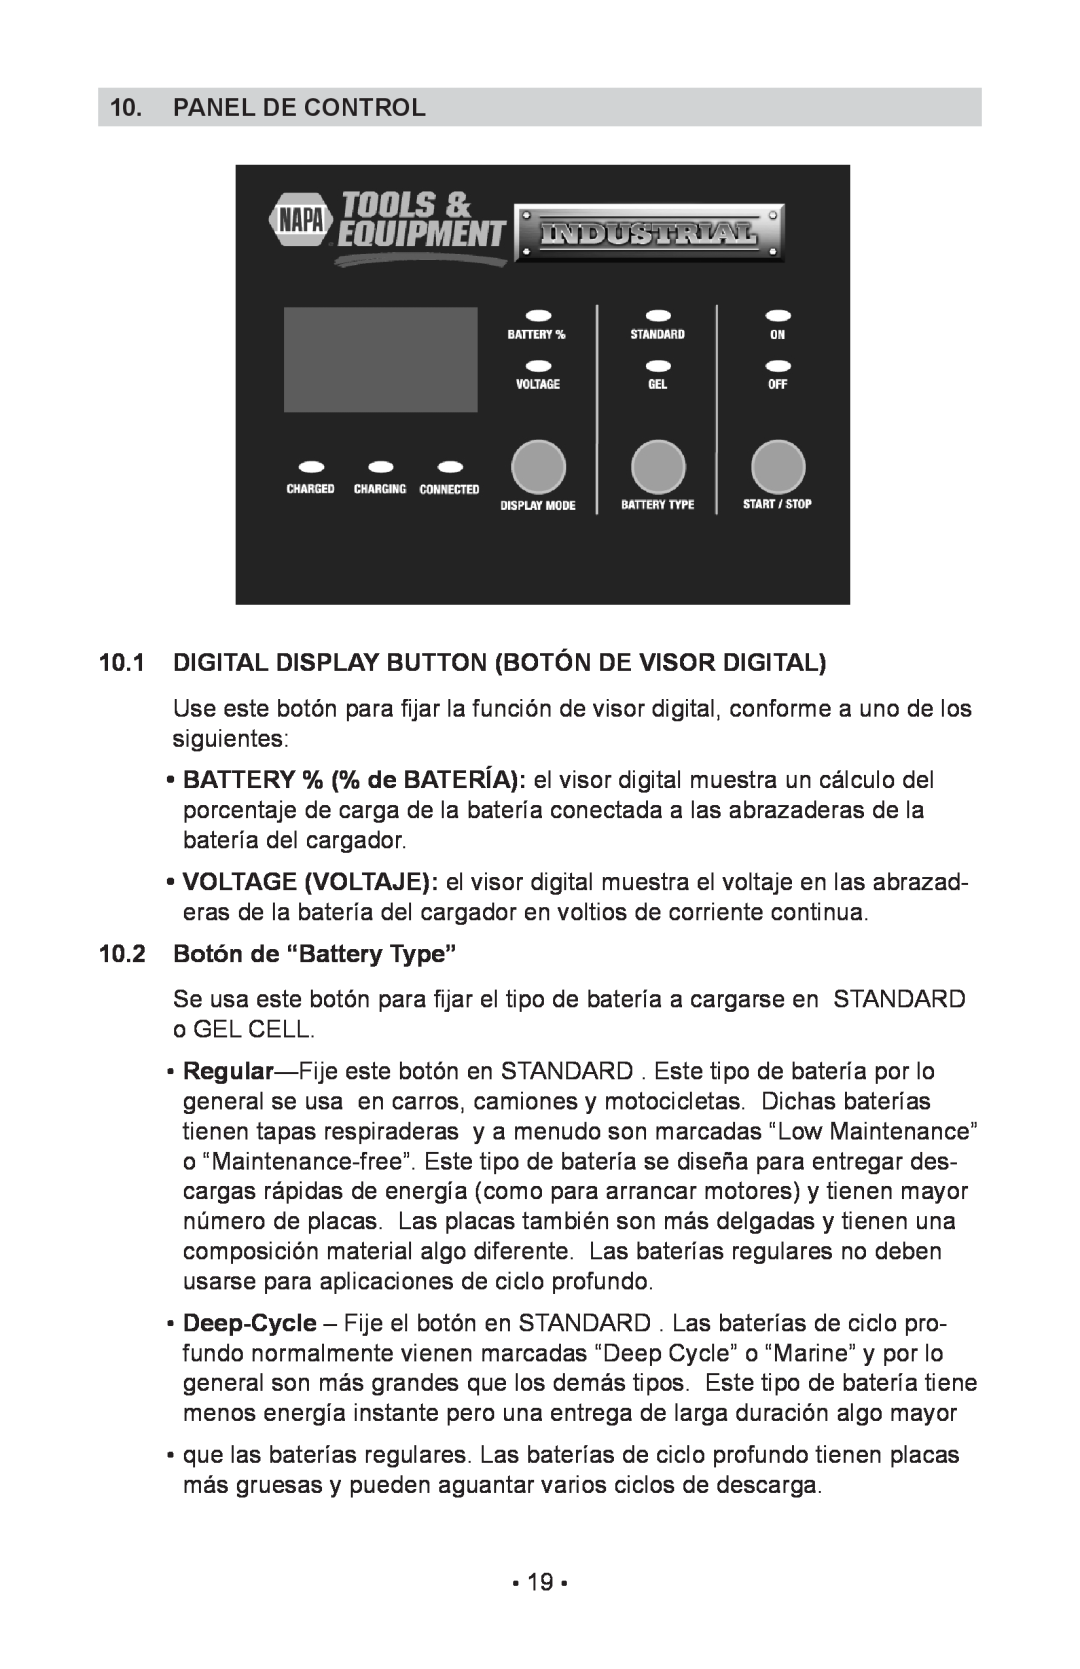 Schumacher 00-99-000943 Panel De Control, Digital Display Button Botón De Visor Digital, 10.2 Botón de “Battery Type” 